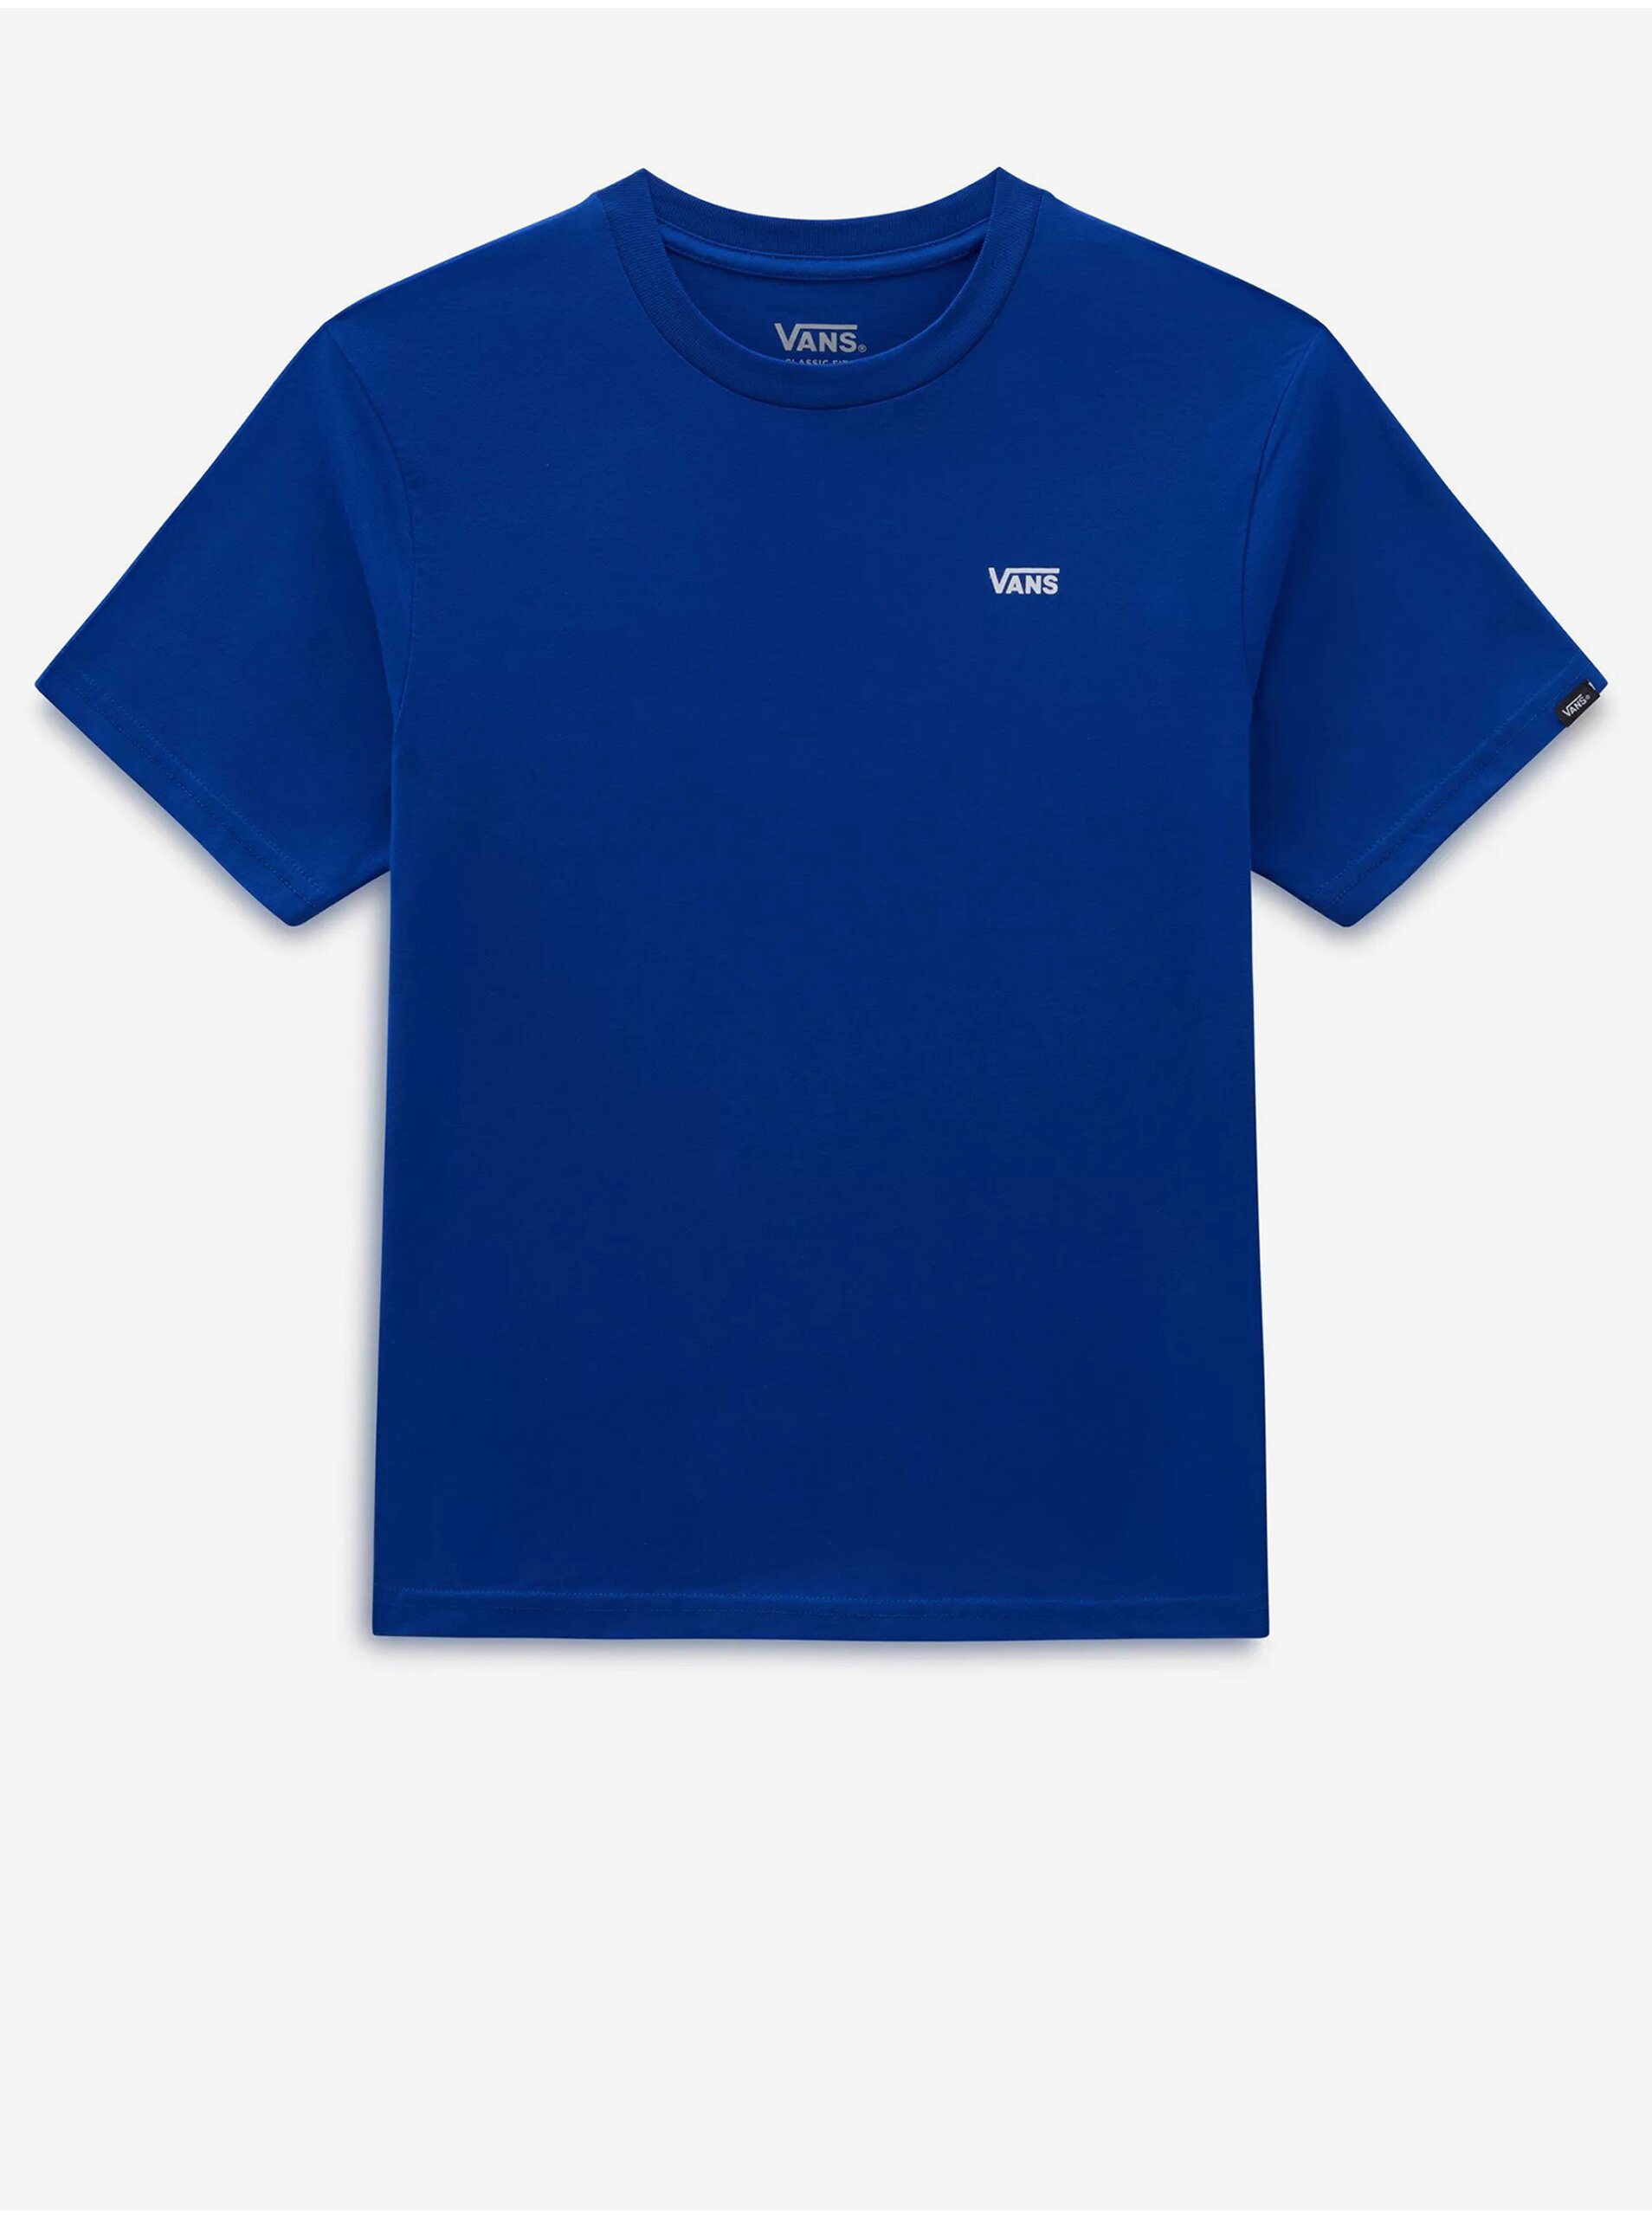 Lacno Modré chlapčenské tričko VANS Left Chest Logo